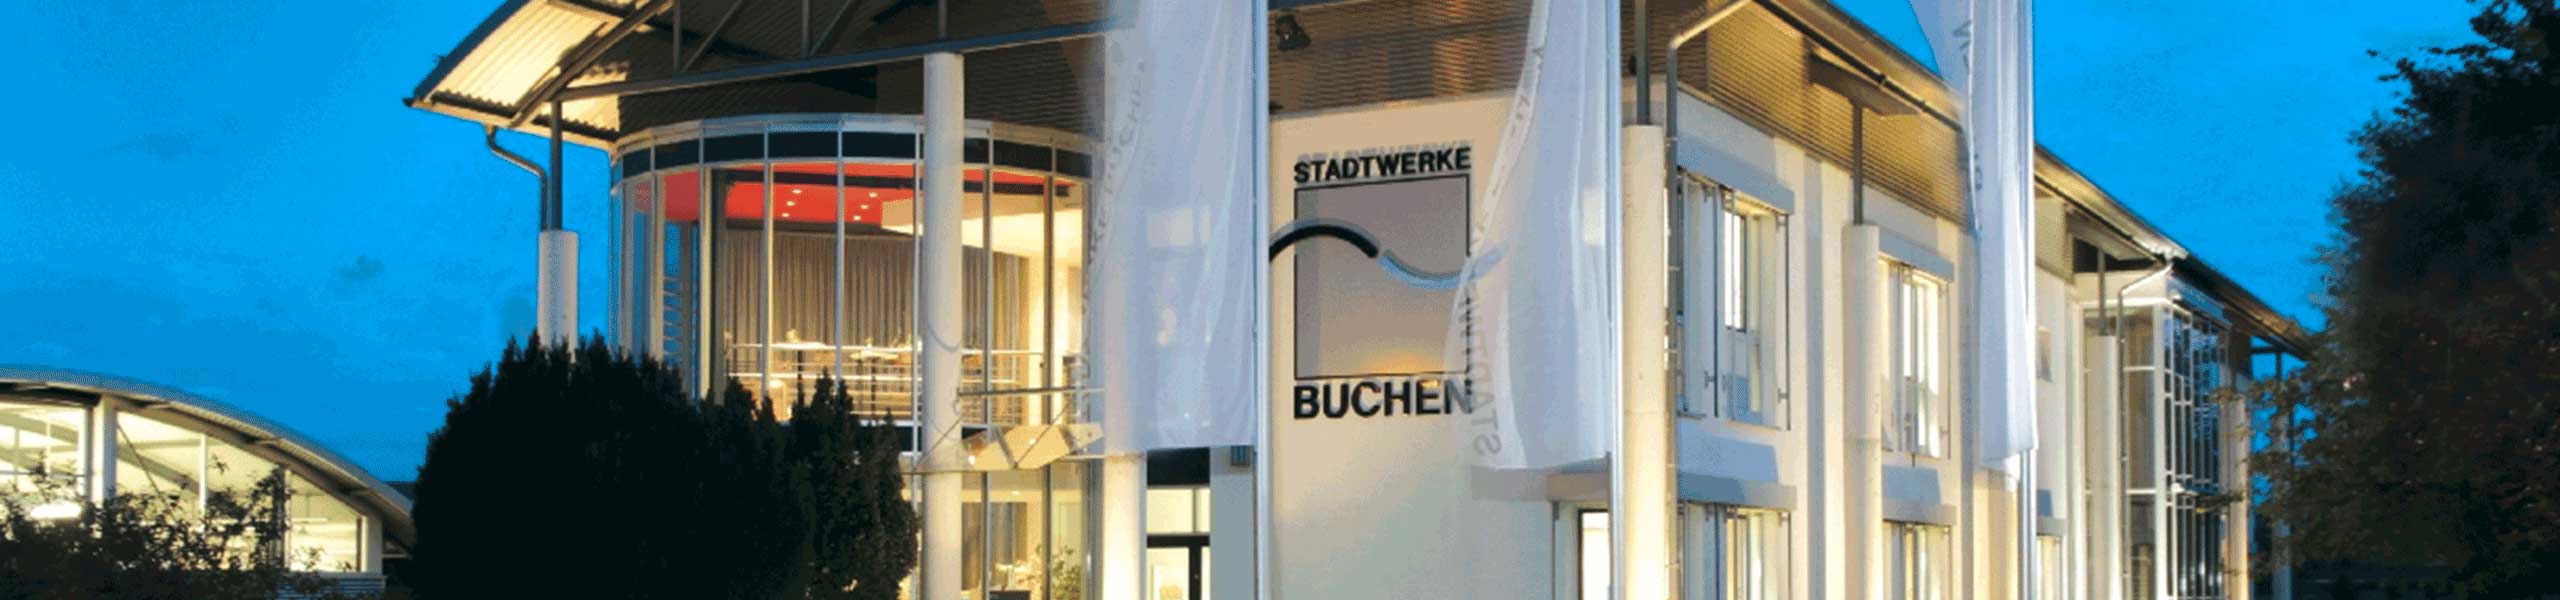 Stadtwerke Buchen GmbH & Co KG - Dienstleistungen